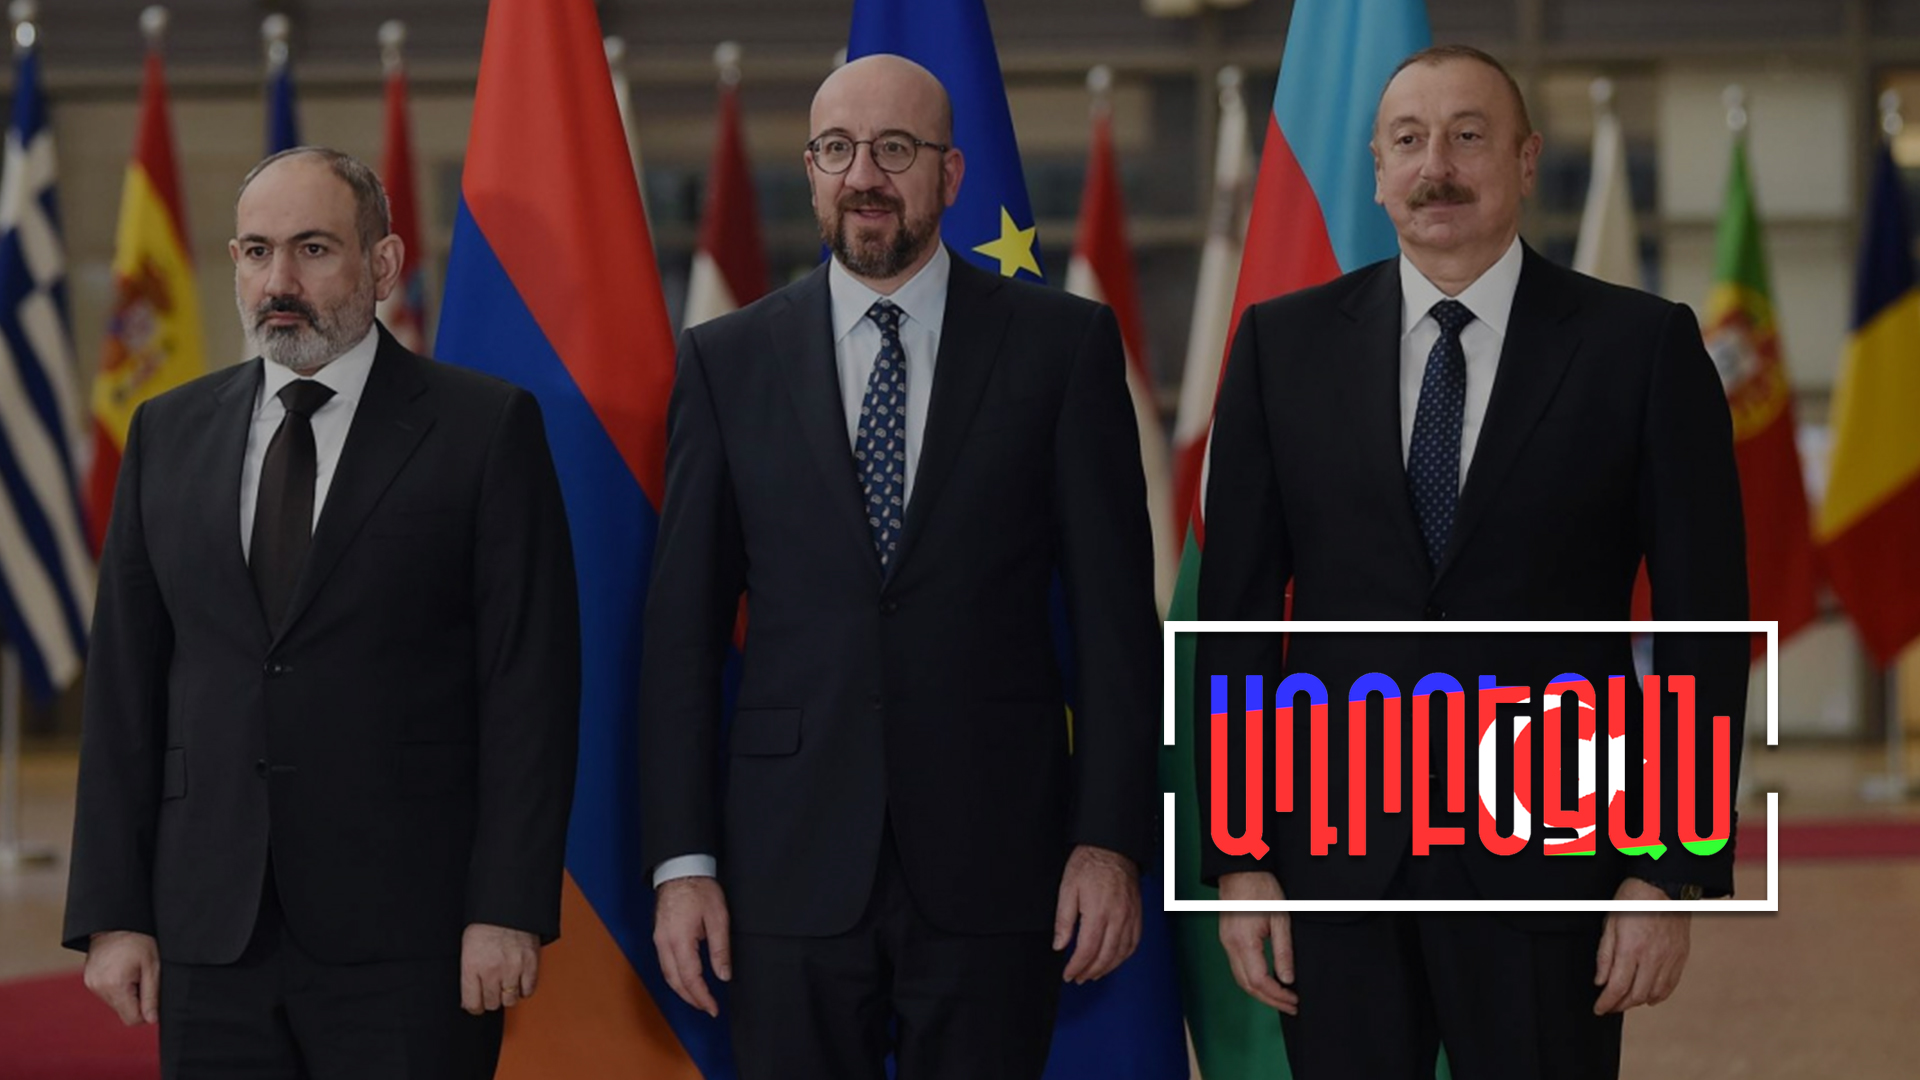 Բրյուսելյան հանդիպման ադրբեջանական մեկնաբանությունները